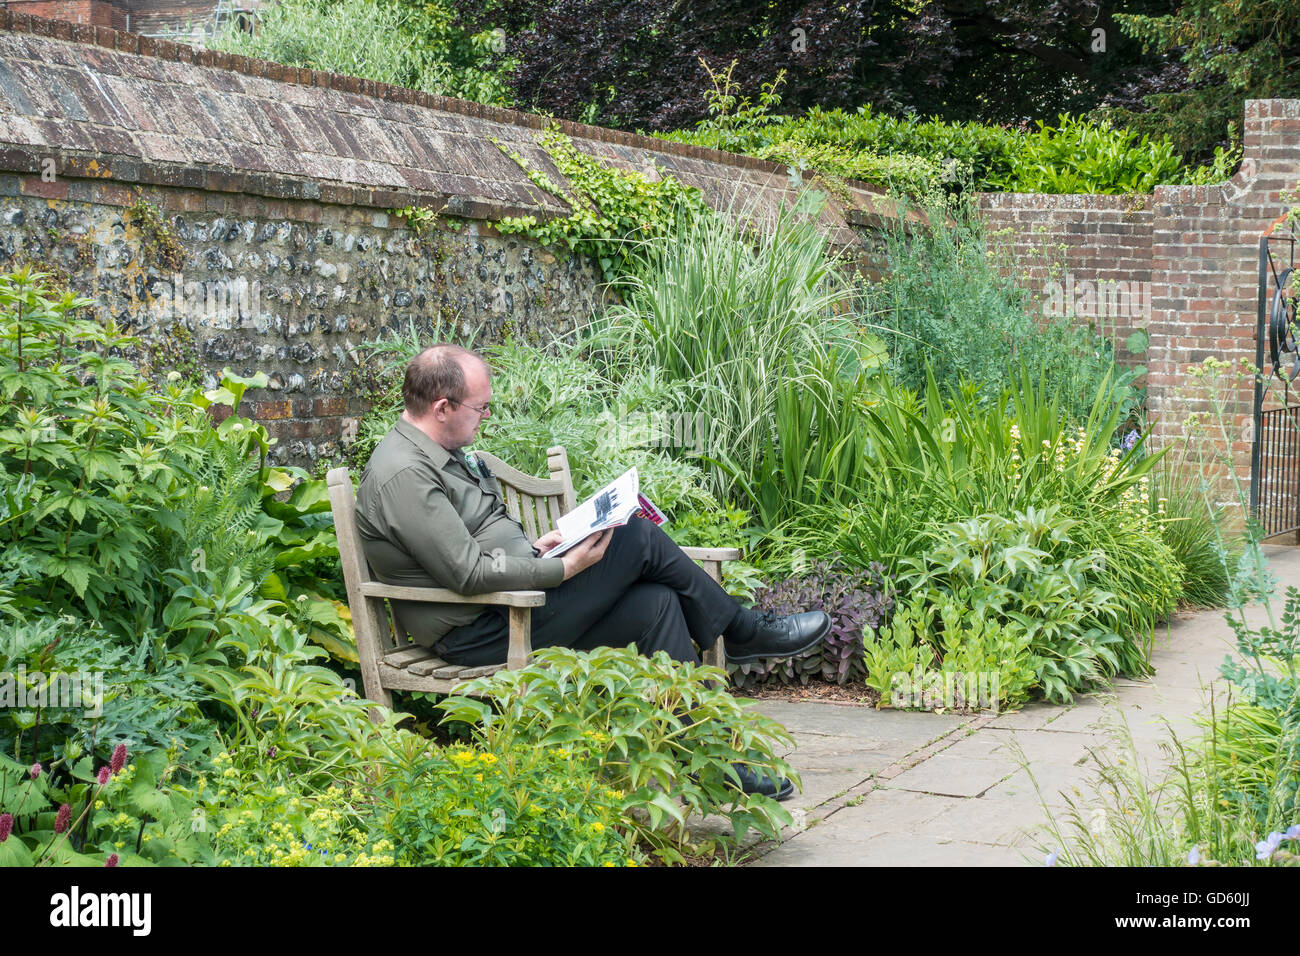 Man on Bench Reading Magazine in Quiet Park Garden Stock Photo